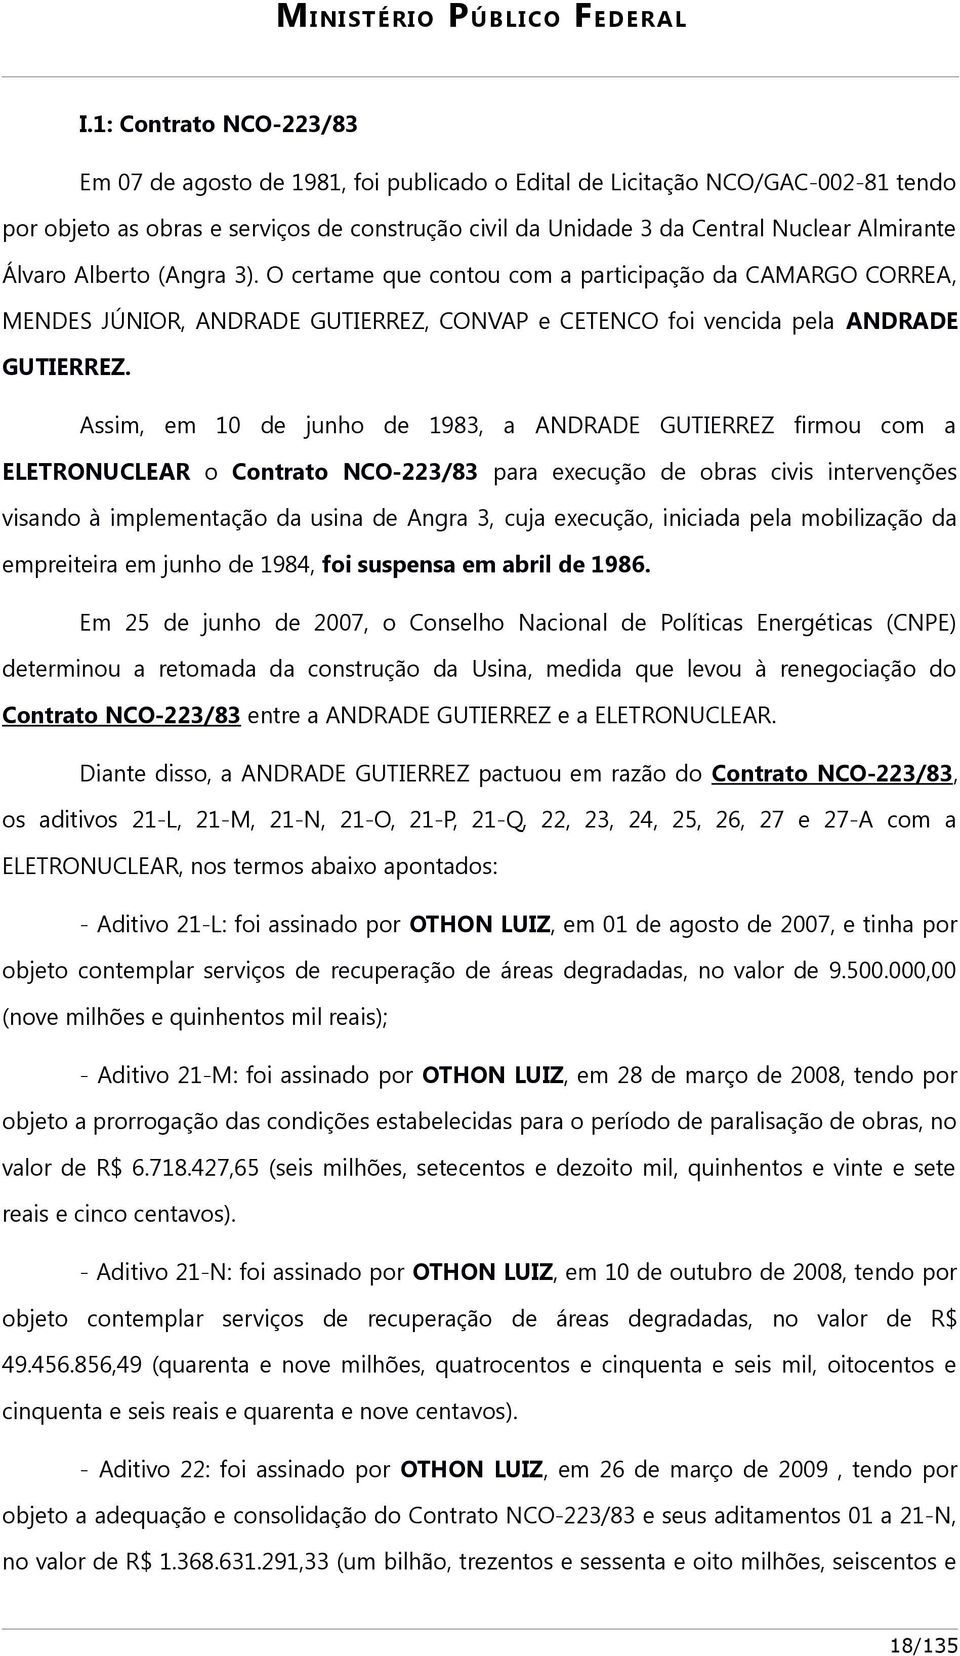 Assim, em 10 de junho de 1983, a ANDRADE GUTIERREZ firmou com a ELETRONUCLEAR o Contrato NCO-223/83 para execução de obras civis intervenções visando à implementação da usina de Angra 3, cuja